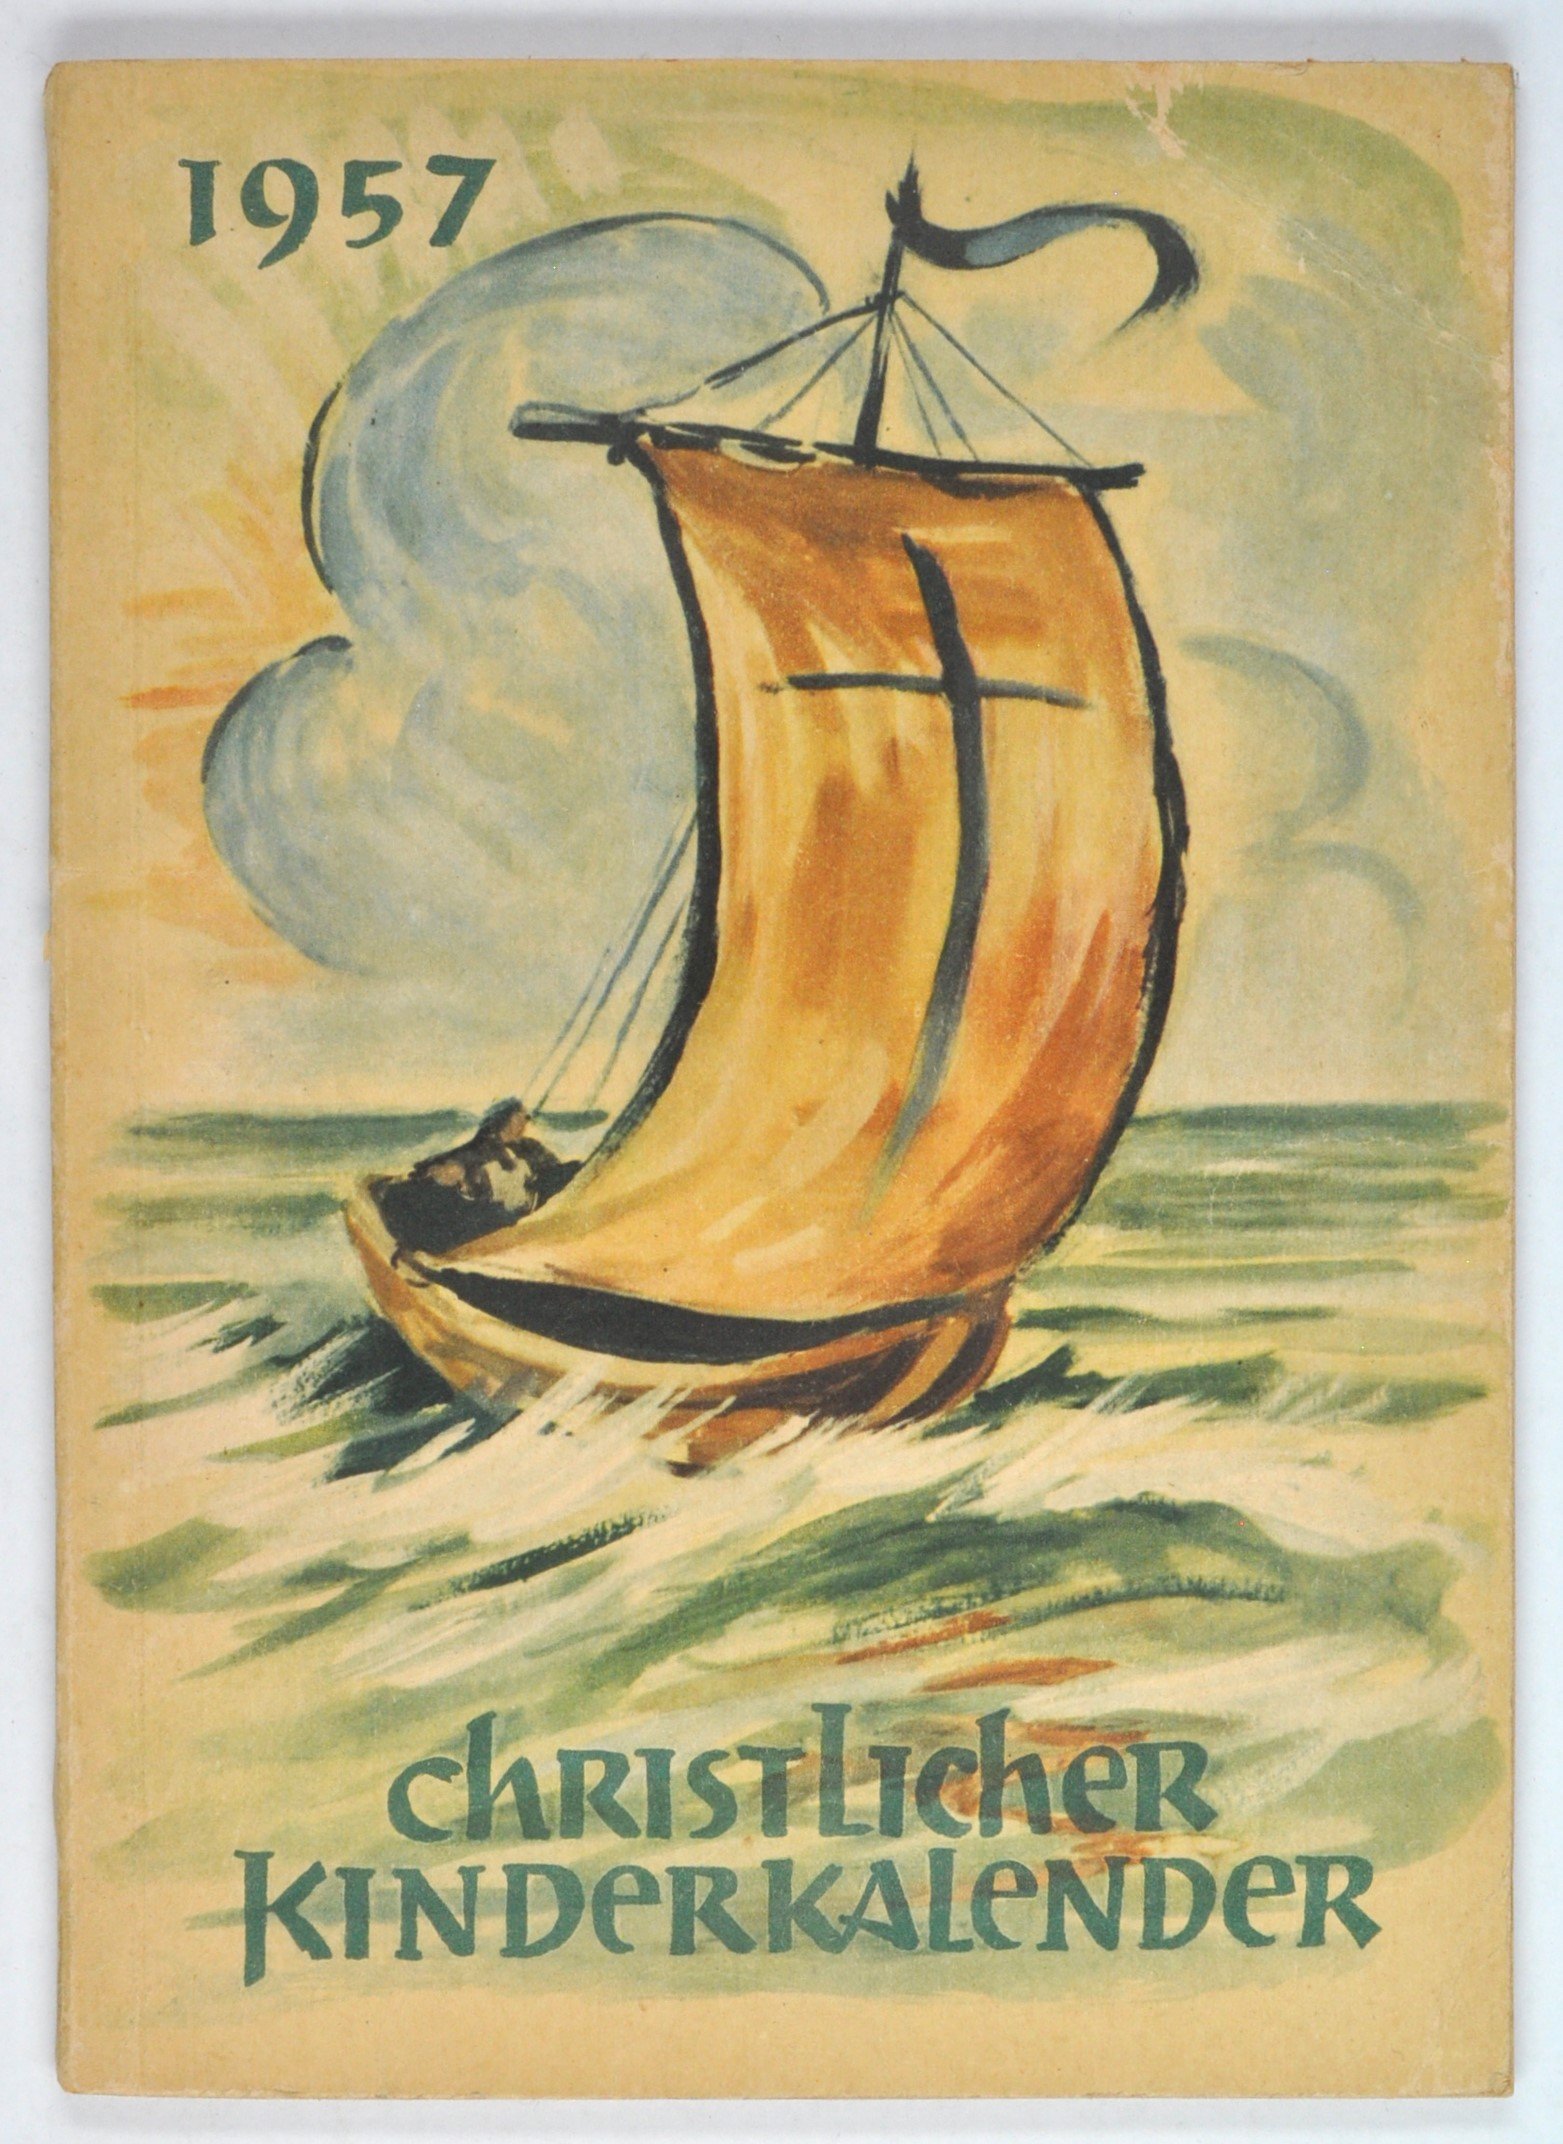 Kalender: Christlicher Kinderkalender 1957. Für kleine und große Kinder (1957) (DDR Geschichtsmuseum im Dokumentationszentrum Perleberg CC BY-SA)